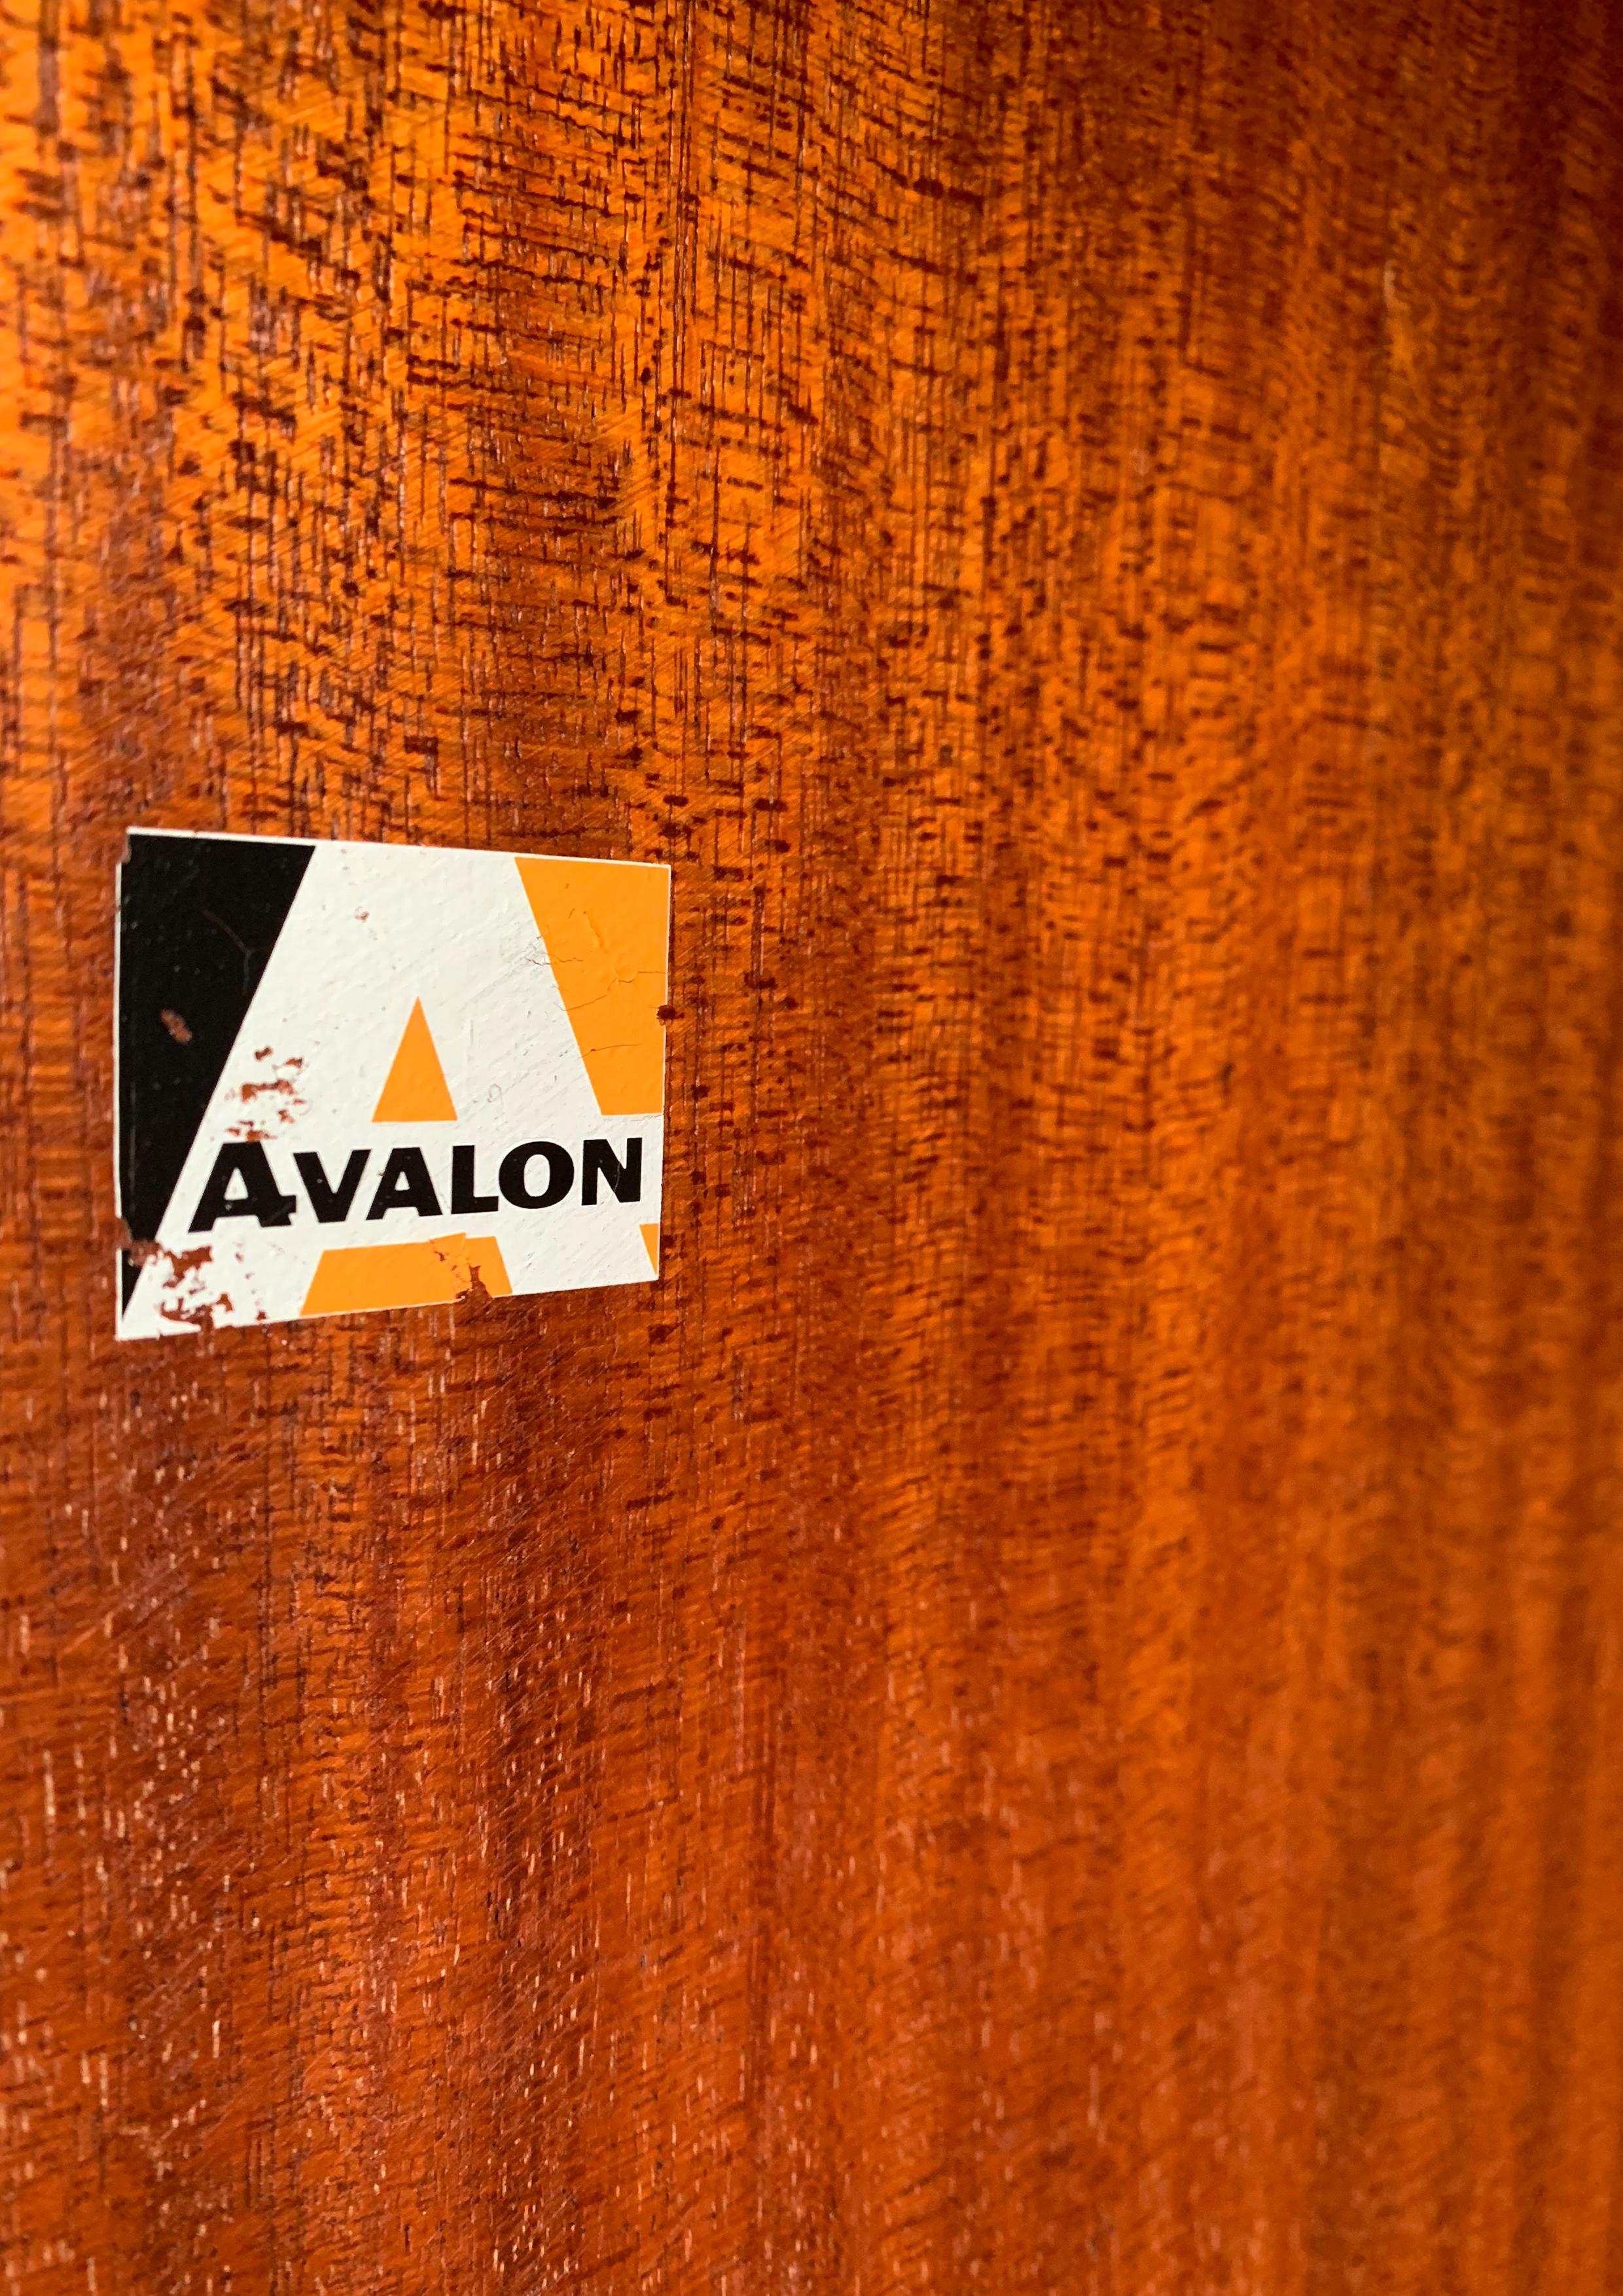 Avalon Modular Teck & Metal Multi Piece Bookcase Mid Century Modern Wall Unit

Avalon un ensemble d'étagères et d'armoires superposées en teck du milieu du siècle comprenant une commode à trois tiroirs, deux étagères, un bureau rabattable, deux